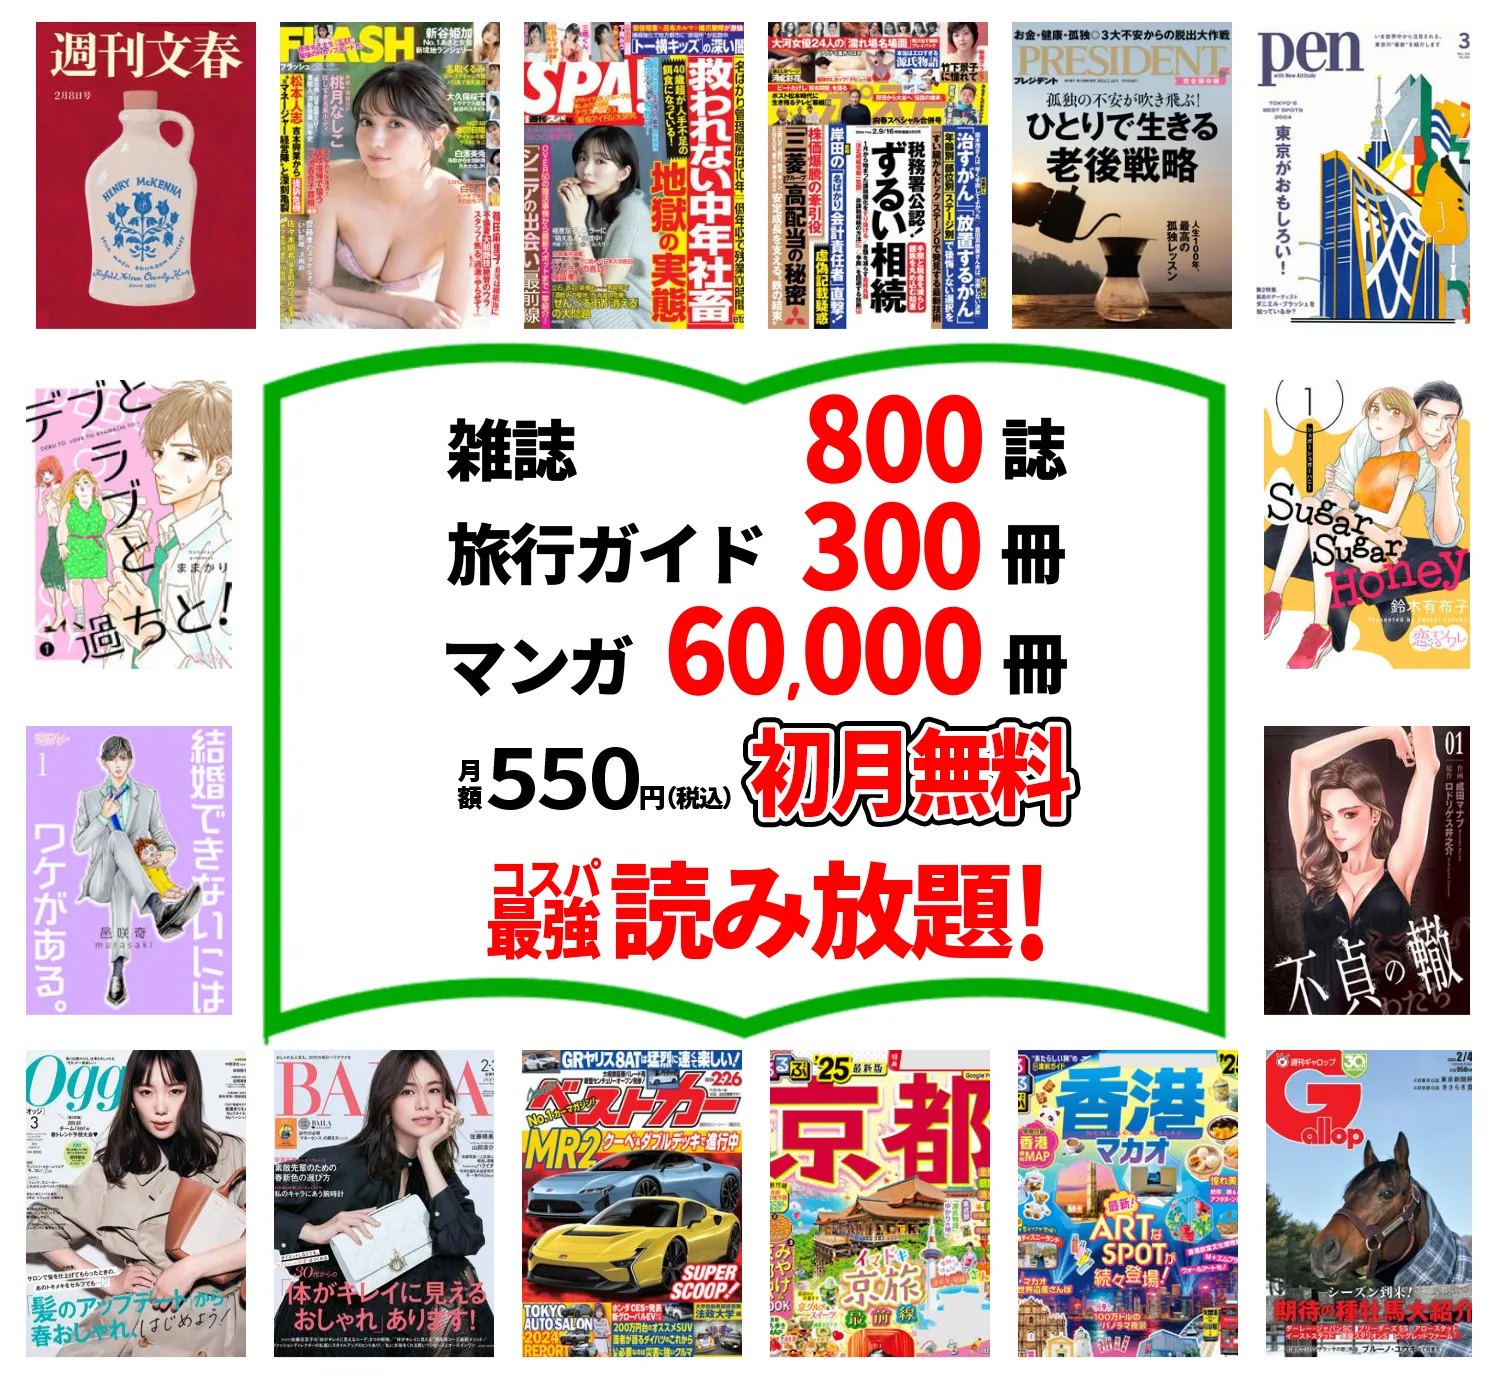 たった550円で雑誌800誌 旅行ガイド300冊以上読み放題。最初の1ヵ月無料。